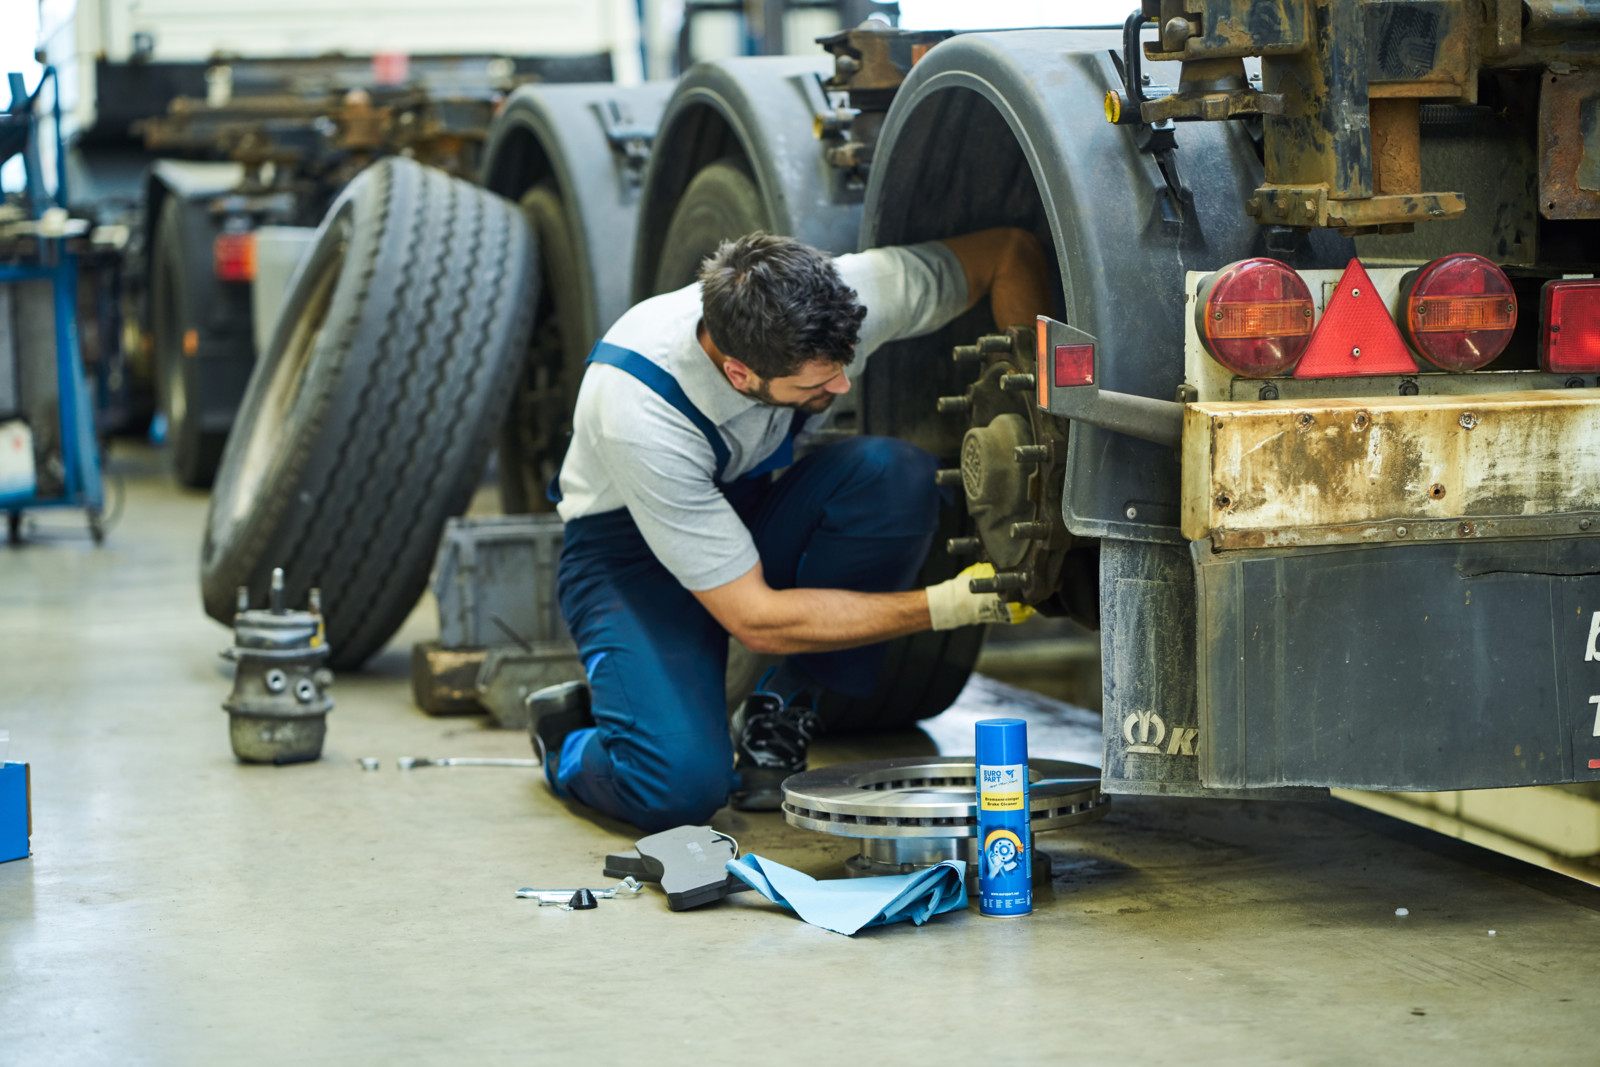 Wartungs- und Reparaturarbeiten am Bremssystem gehören zu den Standardarbeiten in einer Nutzfahrzeug-Werkstatt. Doch ein fachgerechter Bremsenservice umfasst weitaus mehr als den bloßen Ersatz von Verschleißteilen.